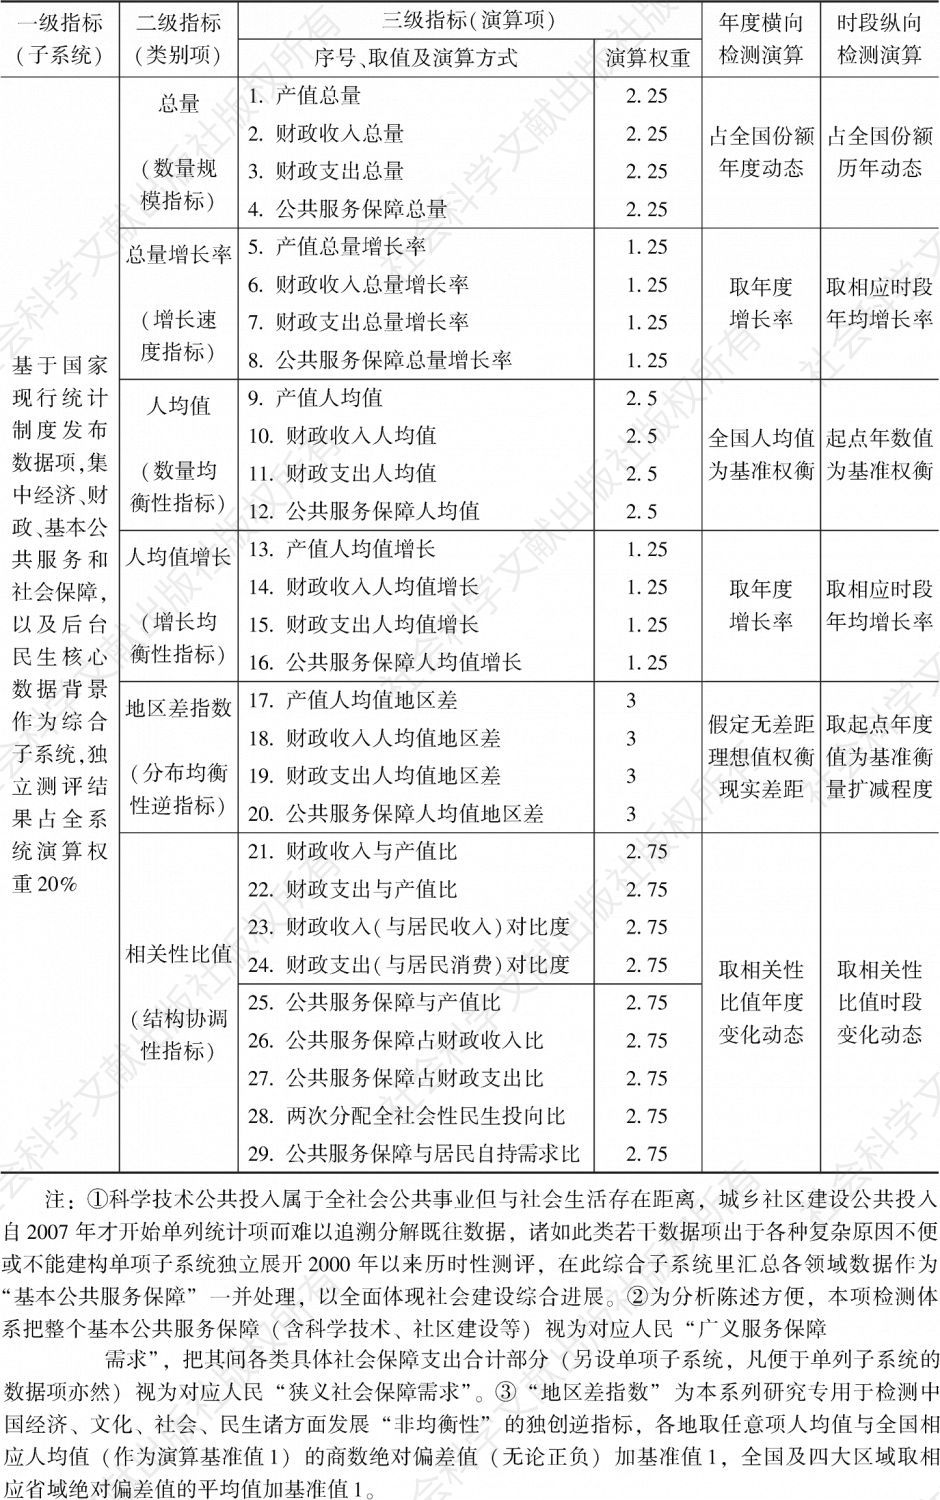 表2a 中国社会建设通用指标检测体系基本公共服务保障综合子系统